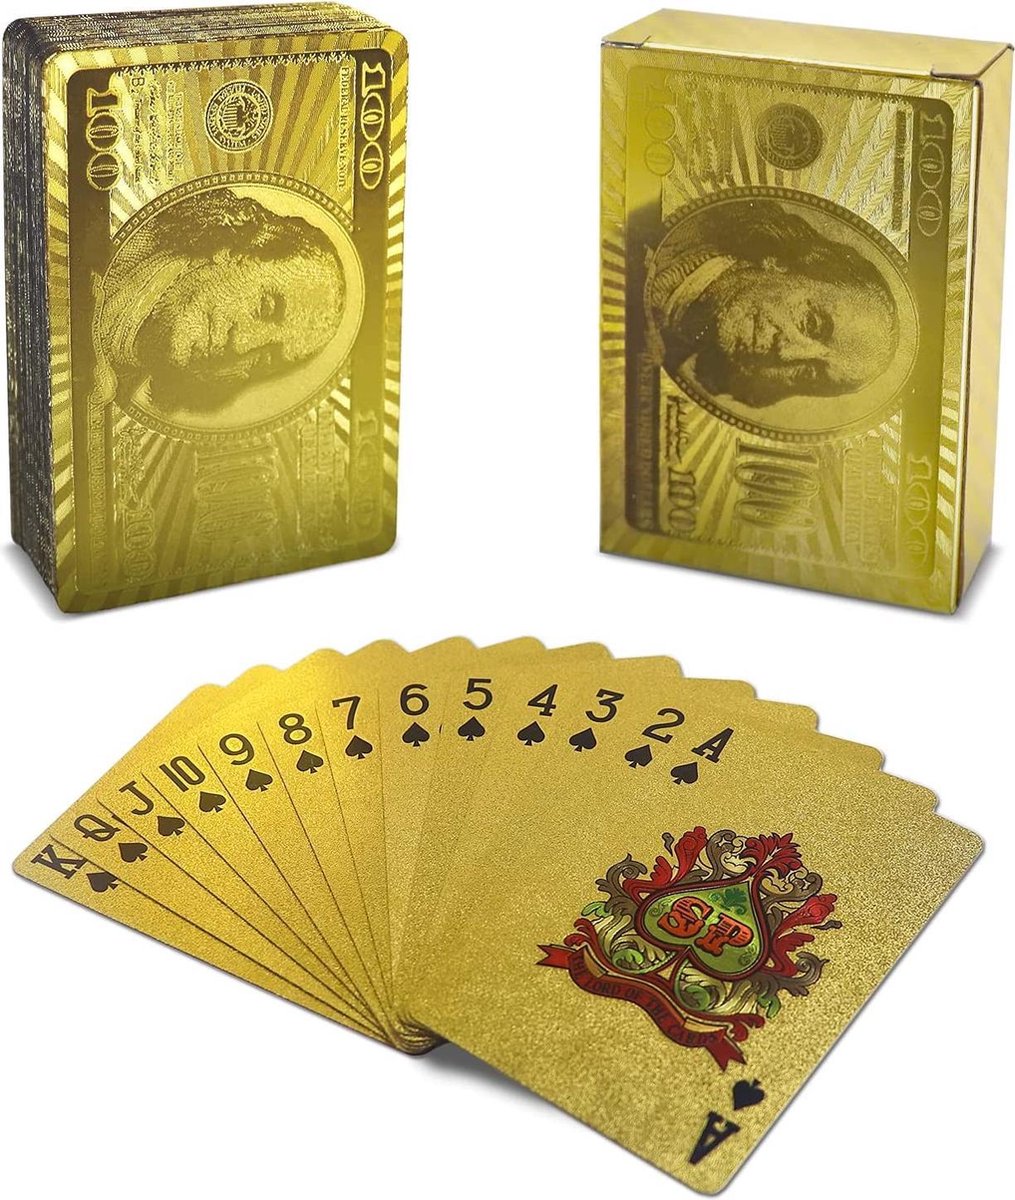 Speelkaarten - Spelkaarten - Kaarten voor Klaverjassen, Toepen, Pokeren Black Jack en meer kaartspellen